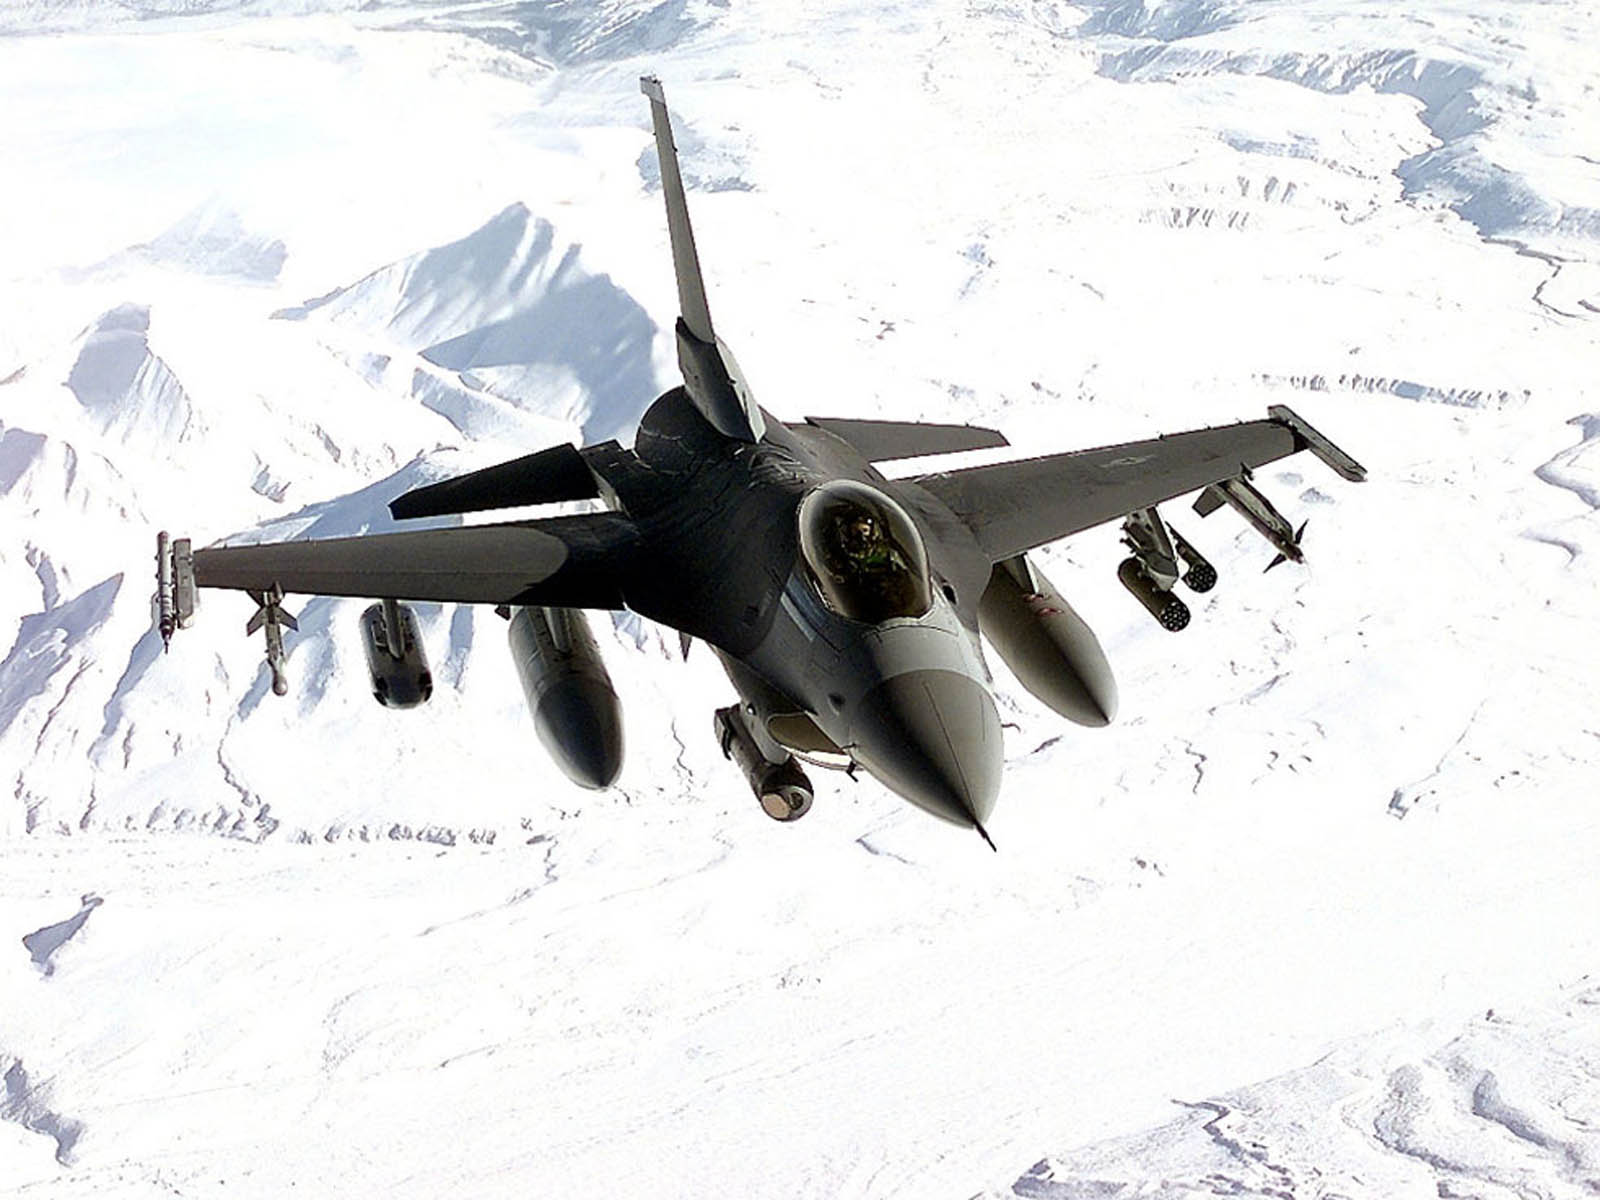 Gambar Pesawat Tempur F16